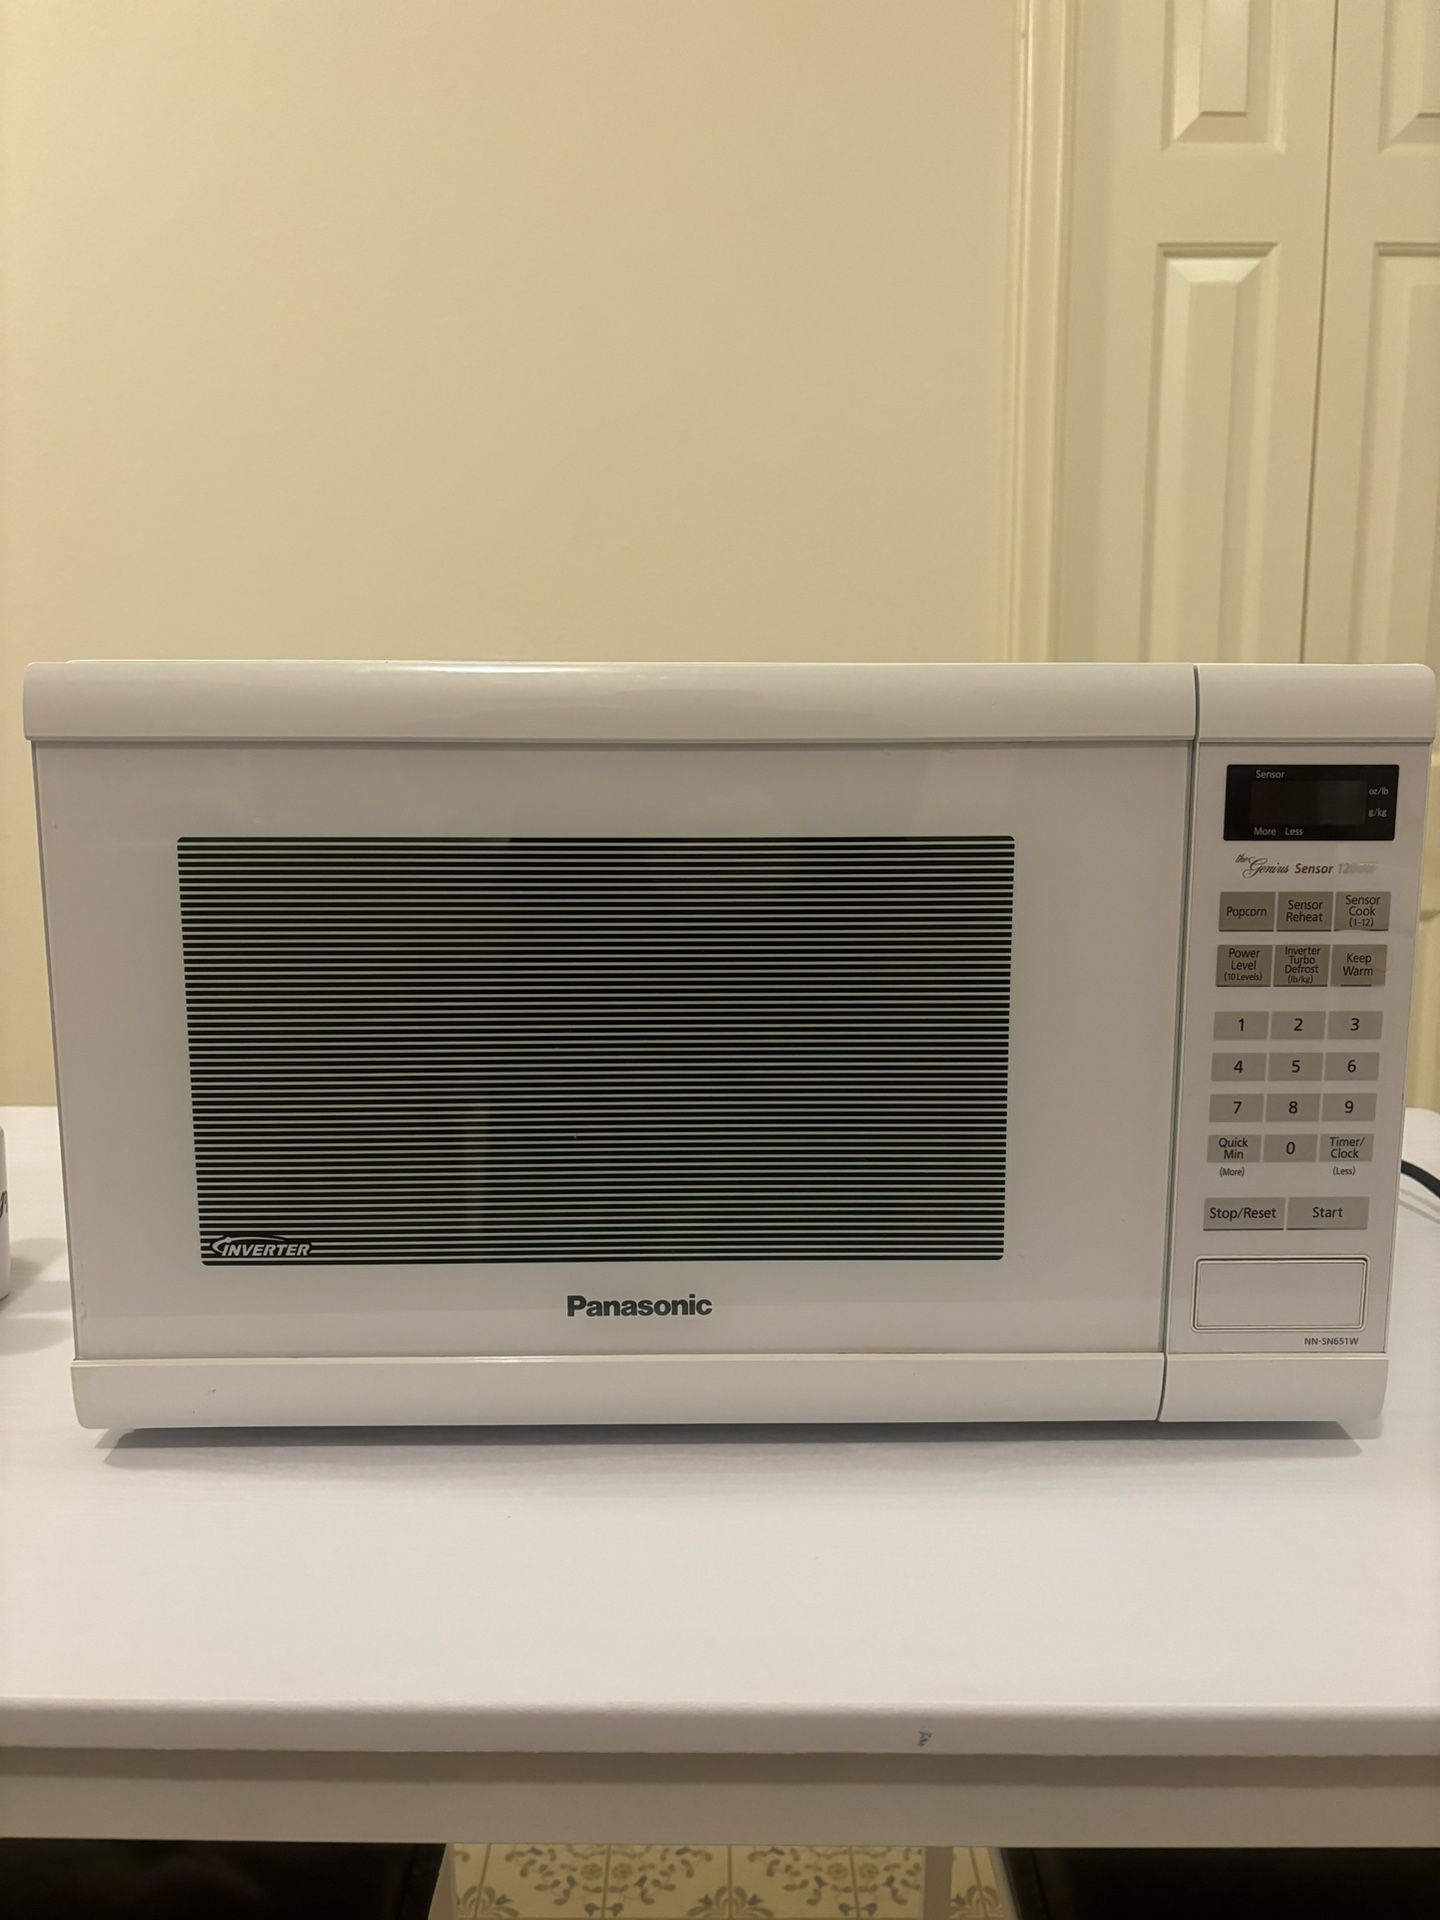 PANASONIC White Microwave